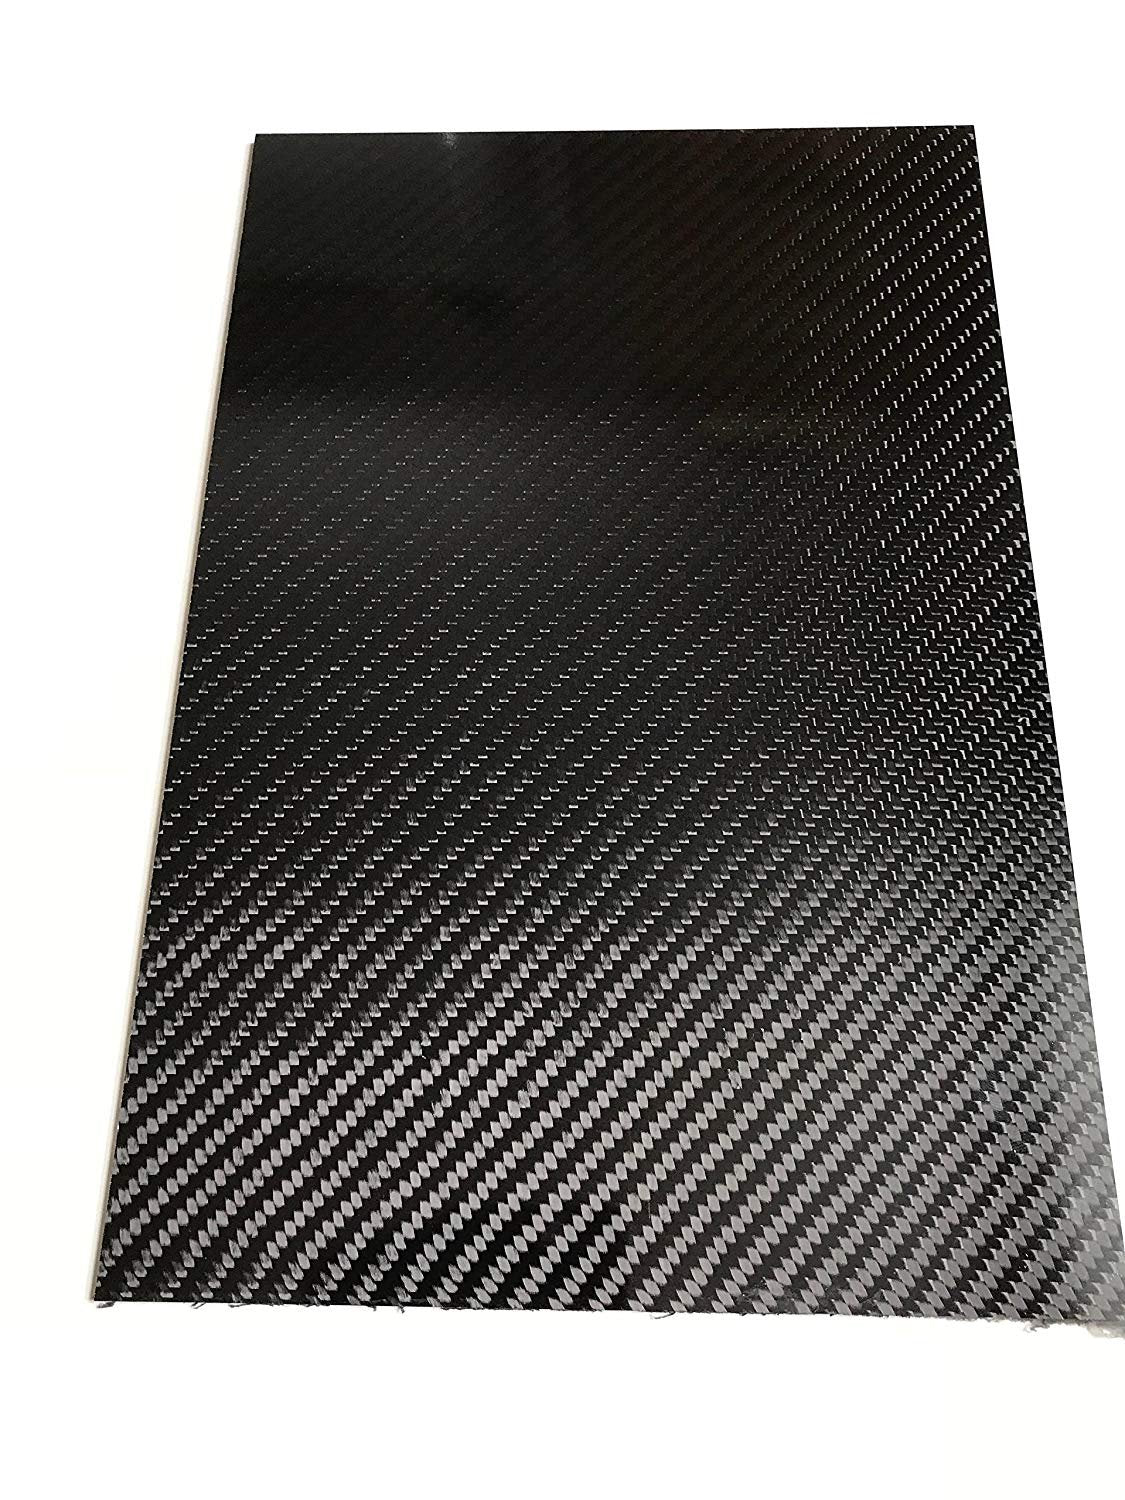 High Gloss Carbon Fiber Sheets